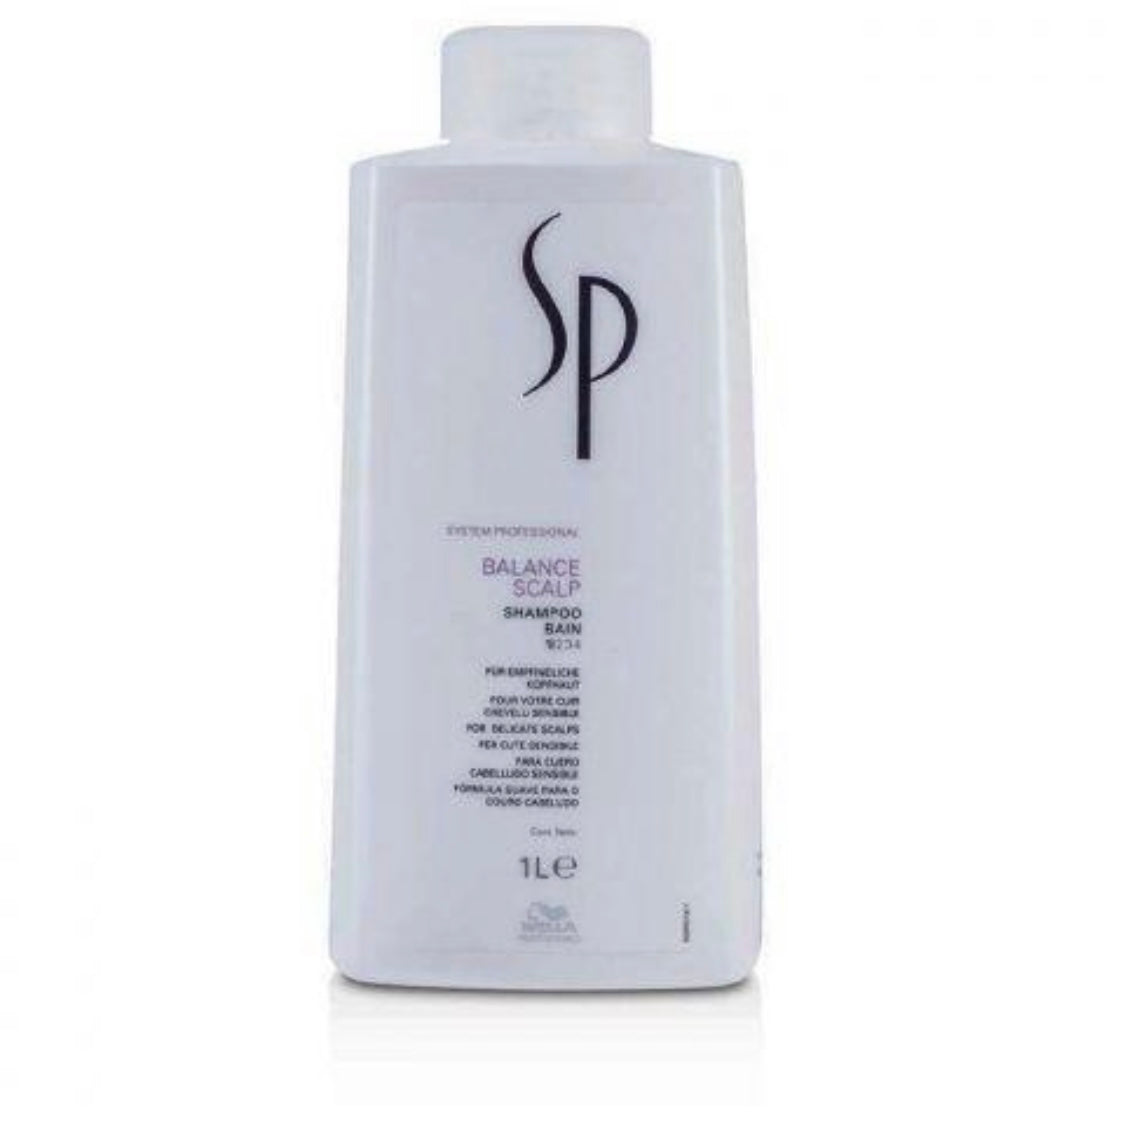 Wella Sp Balance Scalp Shampoo 1000ml - Salon Warehouse